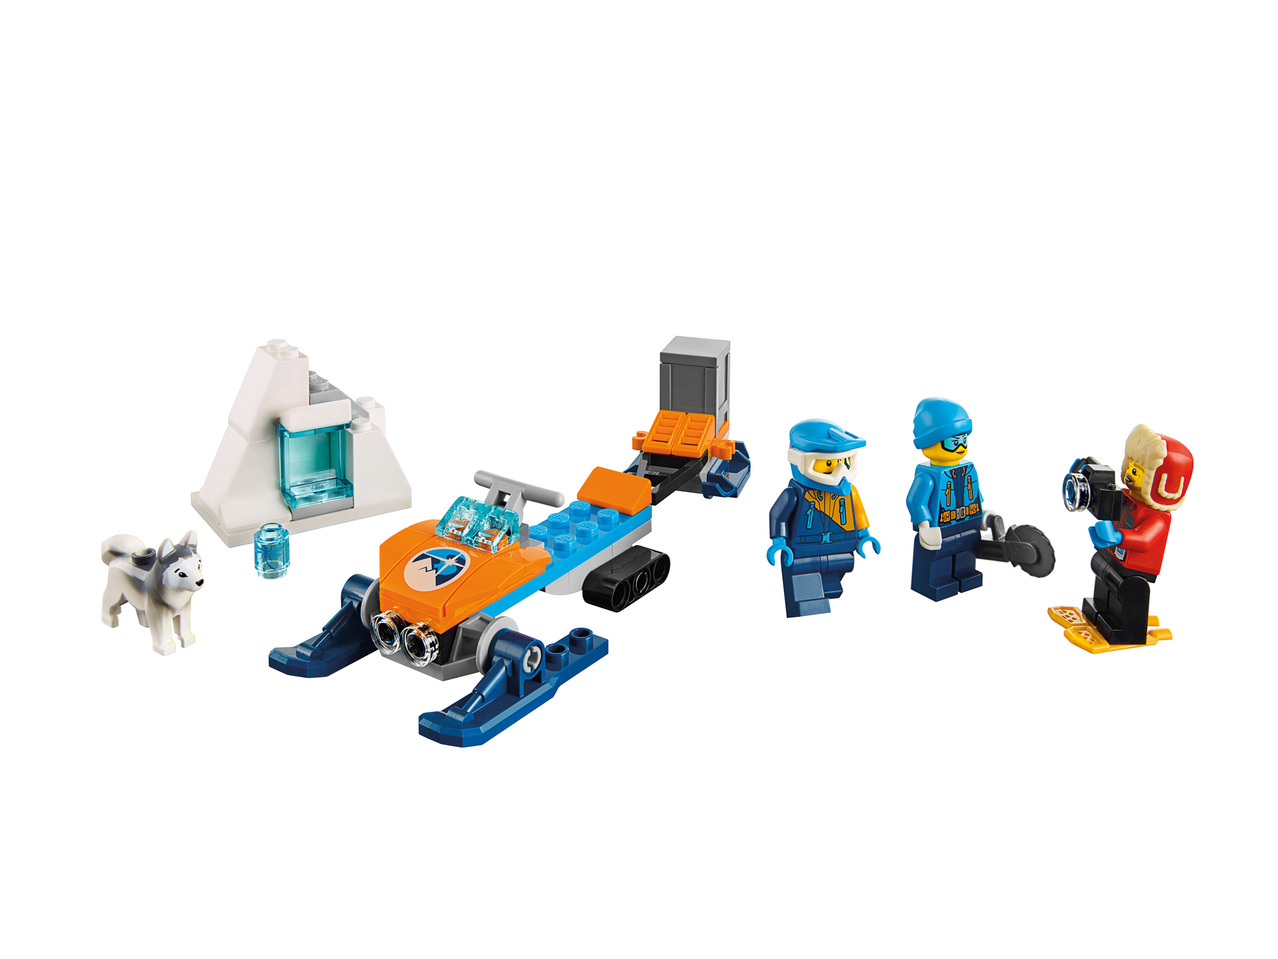 Lego Play Set1